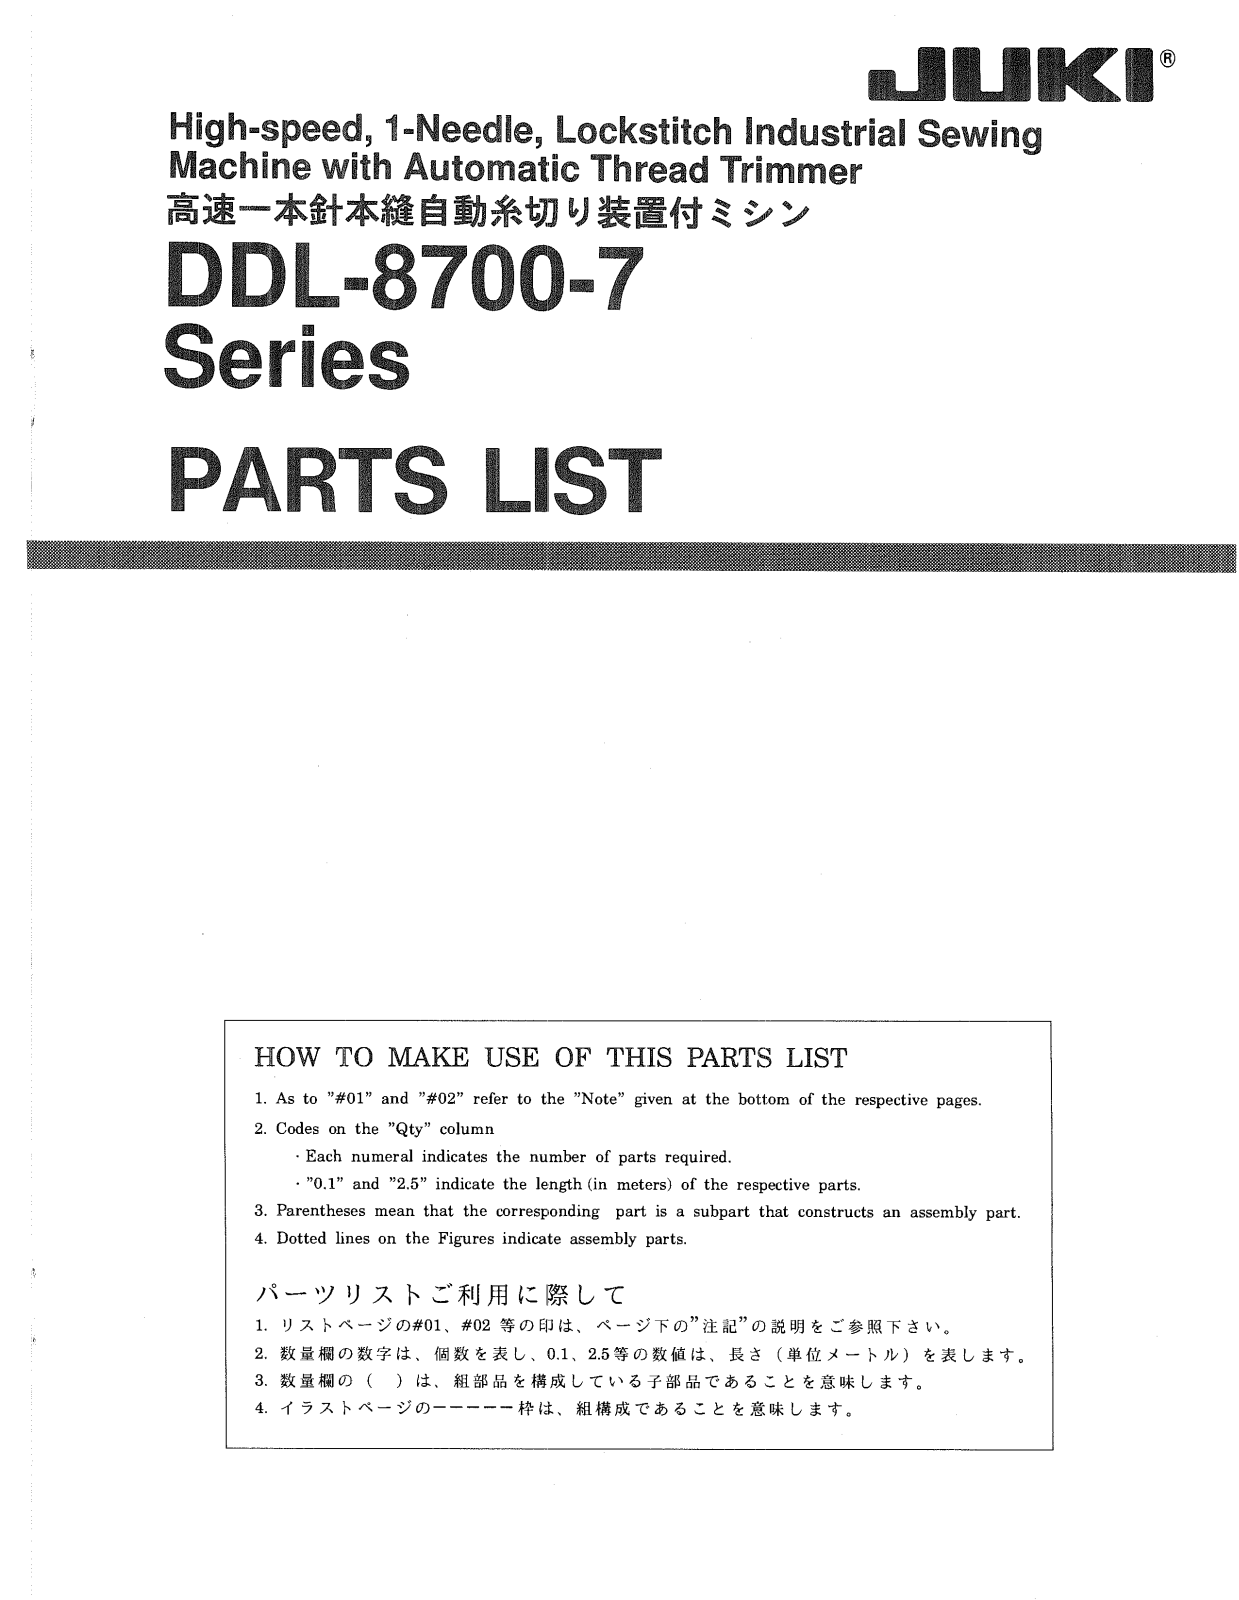 JUKI DDL-8700-7 Parts List